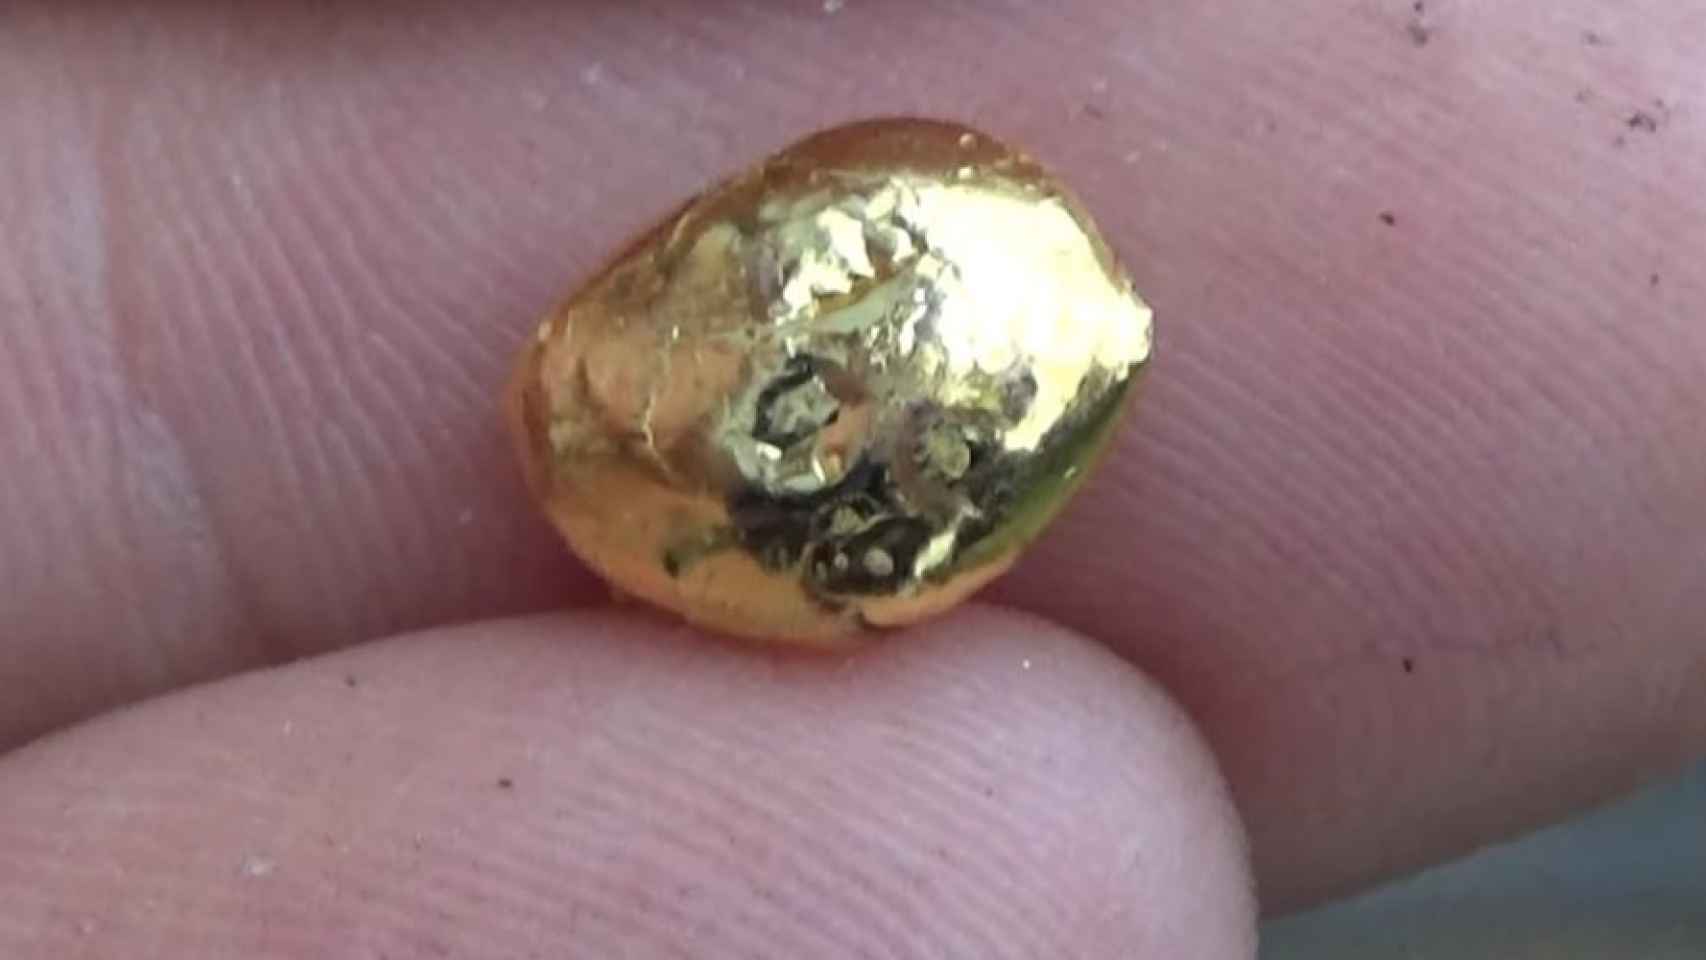 Los componentes electrónicos usan oro, que acaba perdiéndose